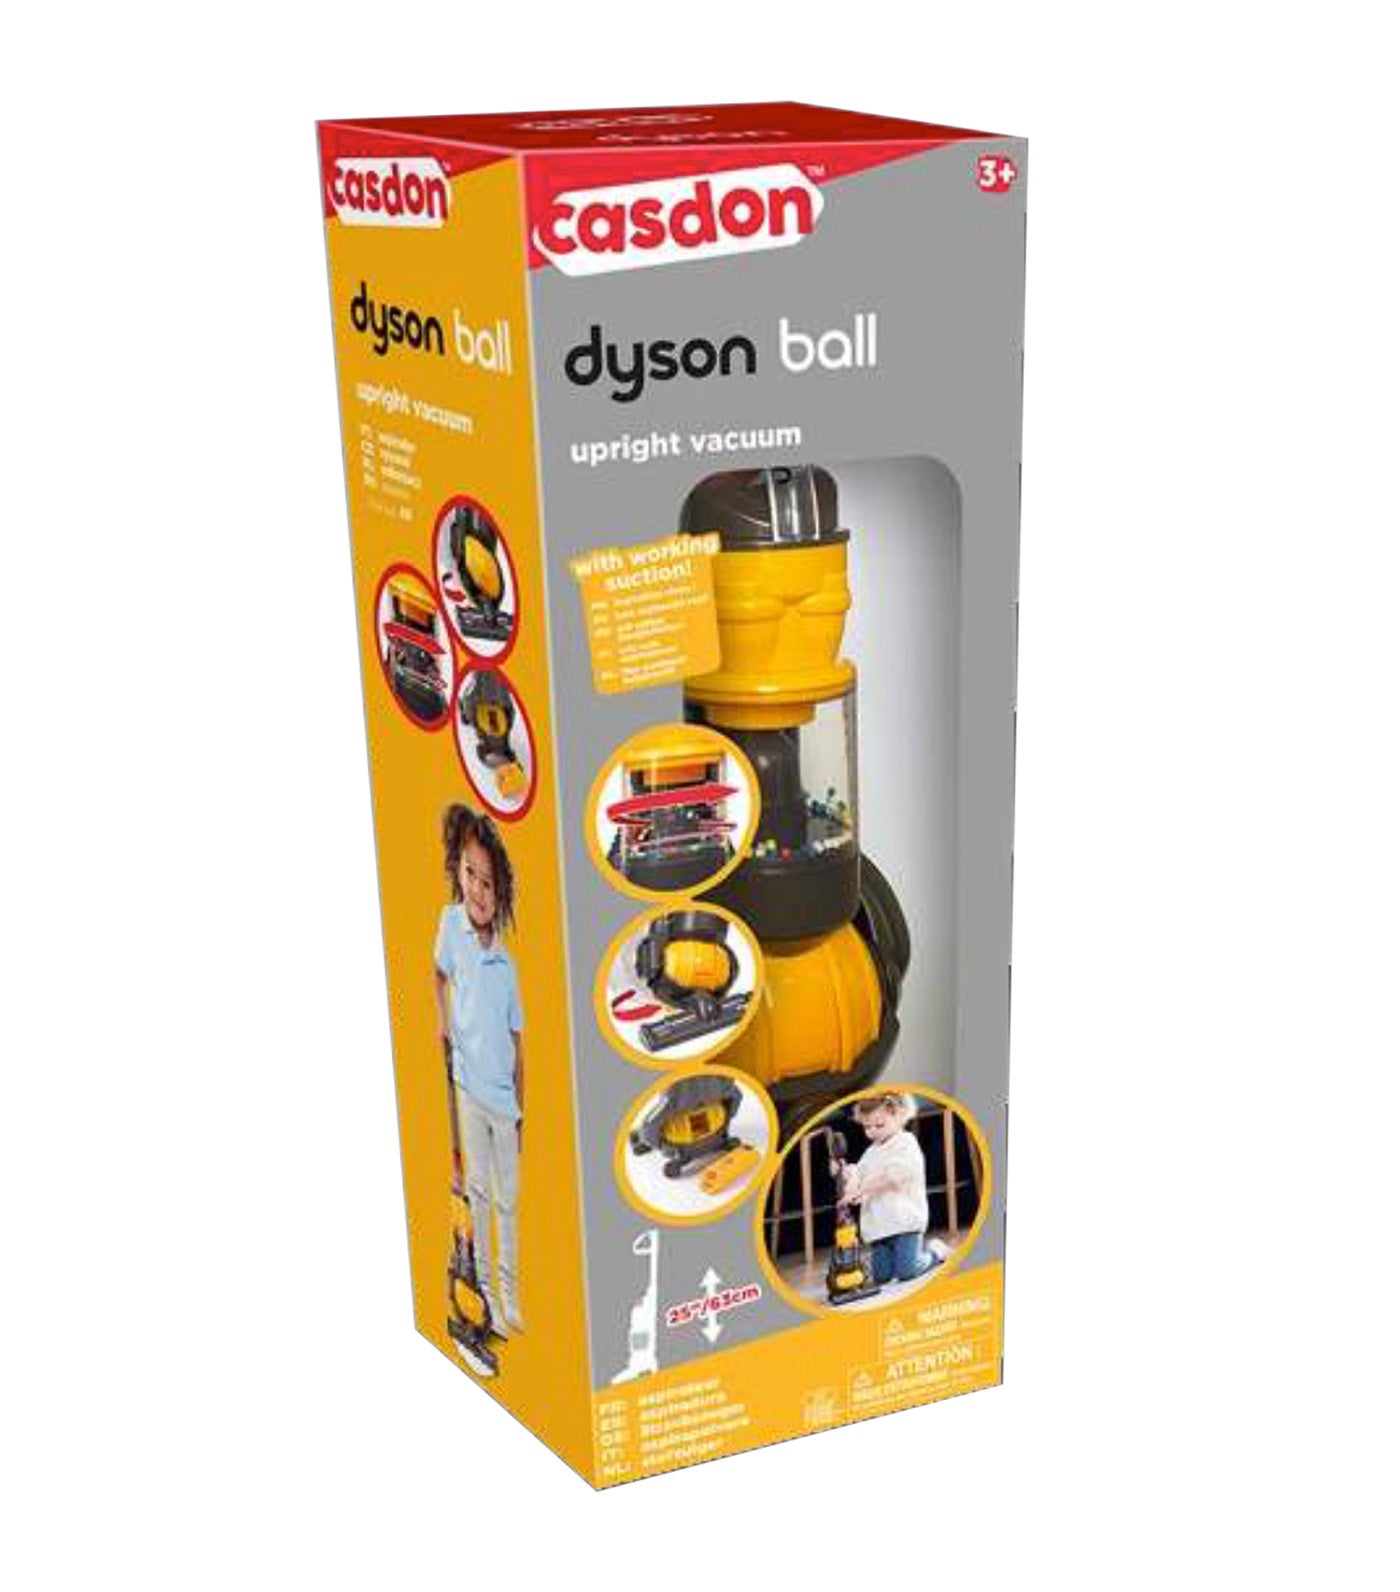 Casdon Dyson Ball - acheter sur Galaxus